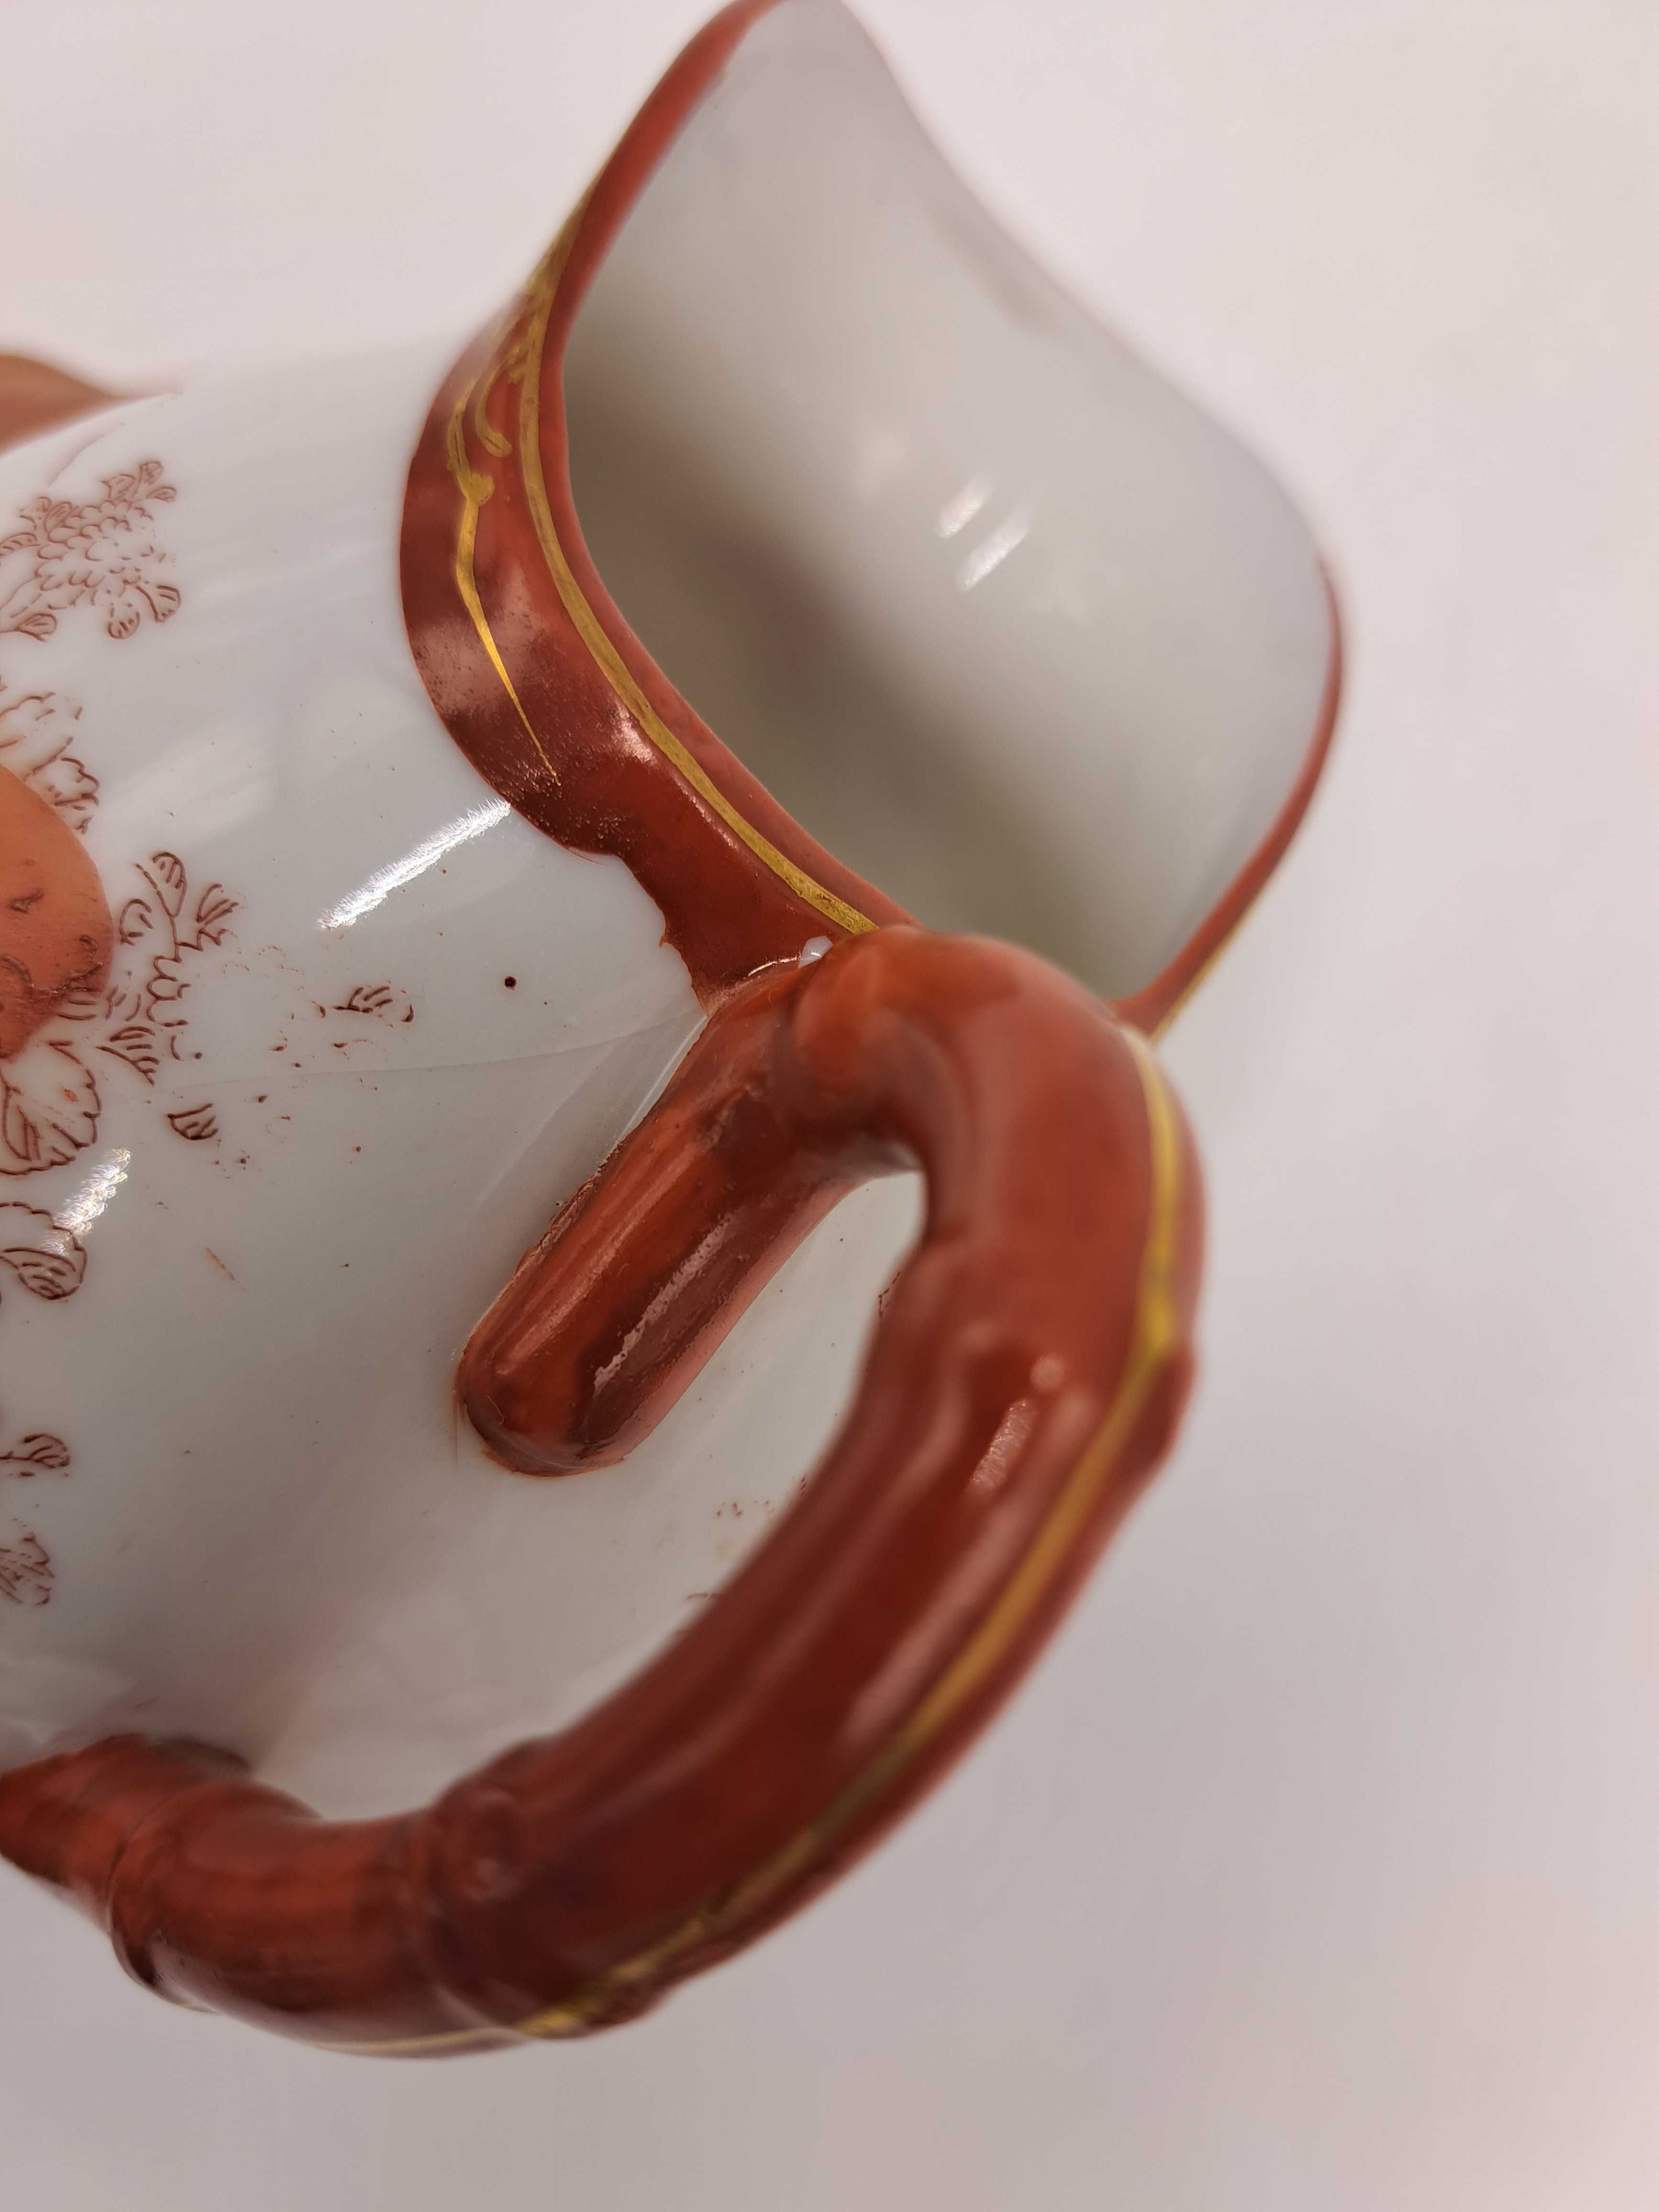 Serwis porcelanowy japoński kawowy ręcznie malowany 5 osobowy